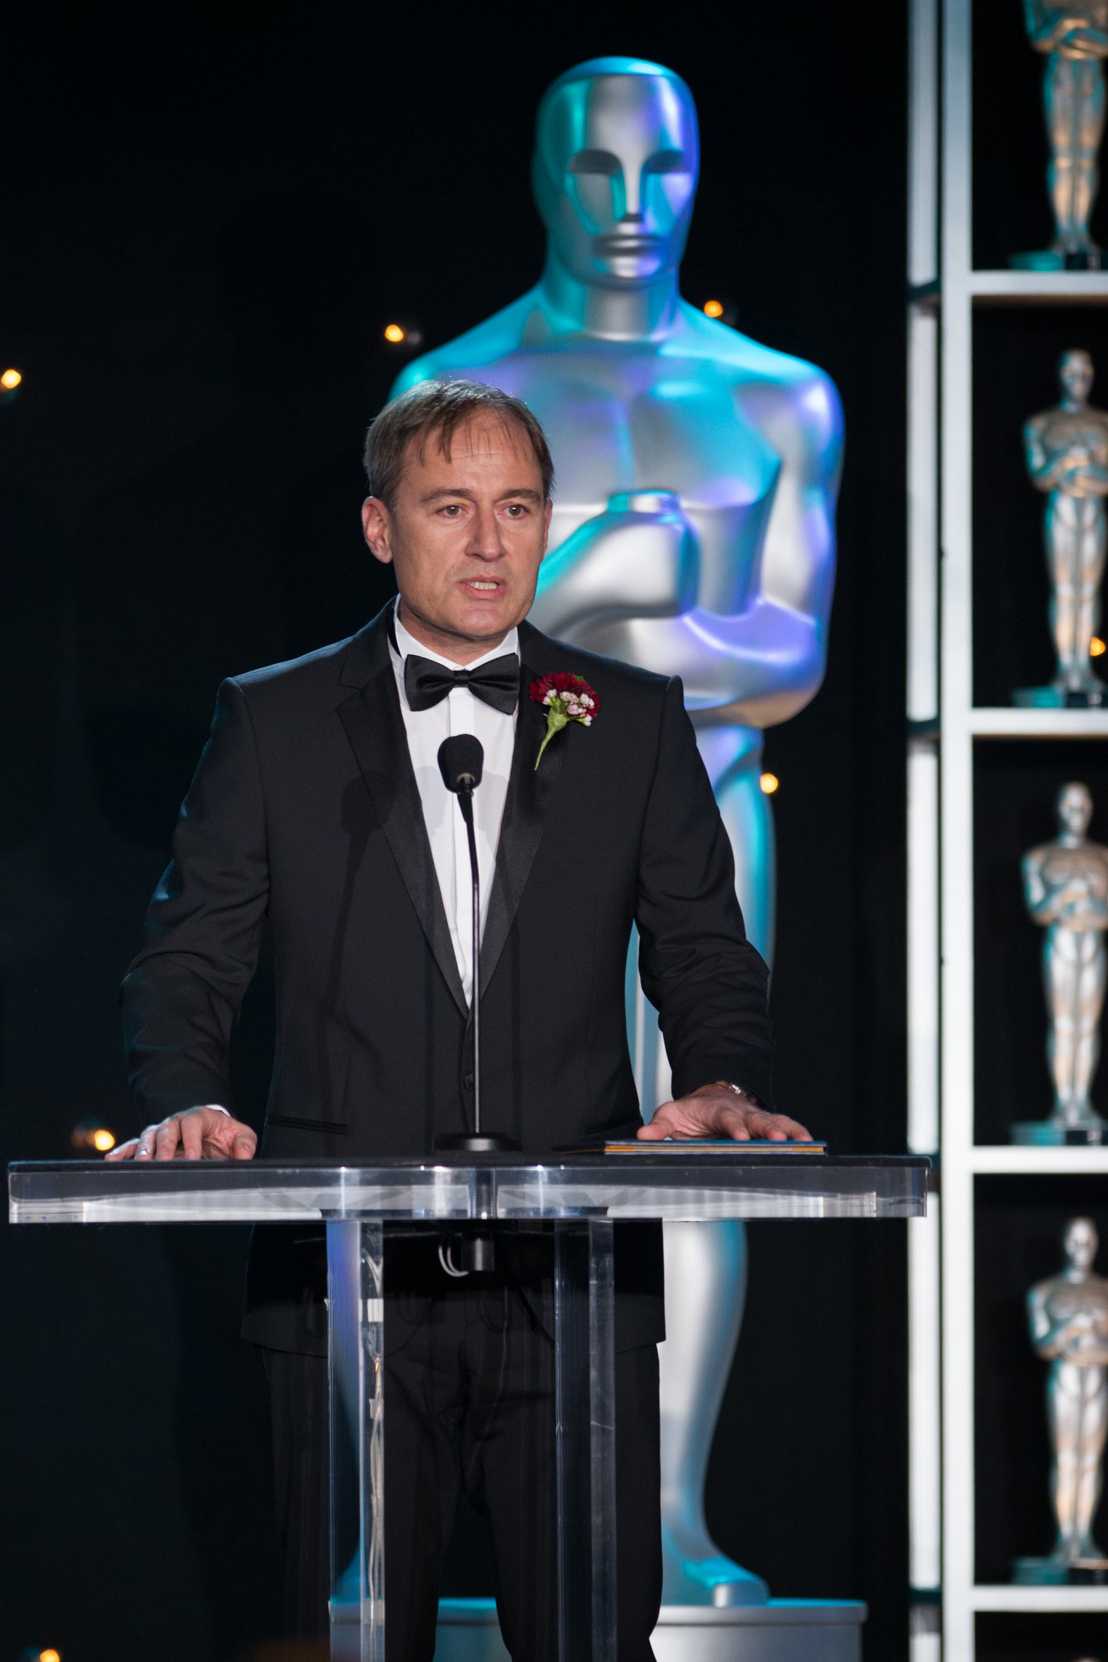 Markus Gross giving a speech after receiving his first "Tech Oscar"